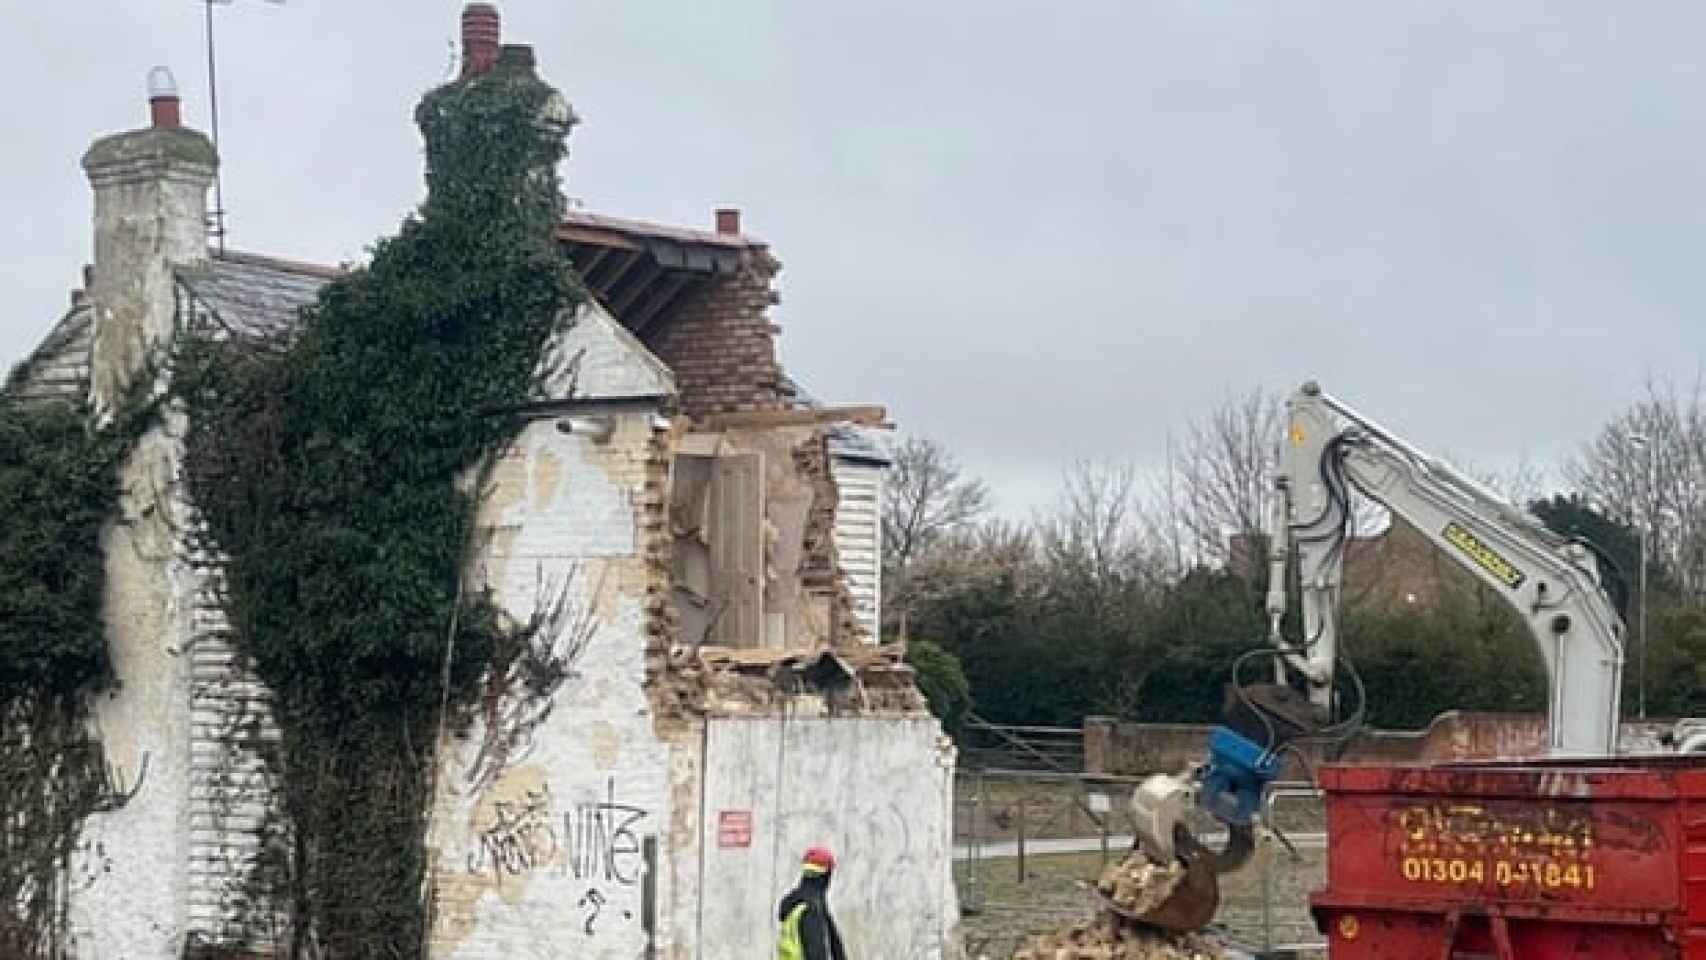 Imagen publicada en Instagram por Banksy que muestra el derribo del edificio, con el mural destruido